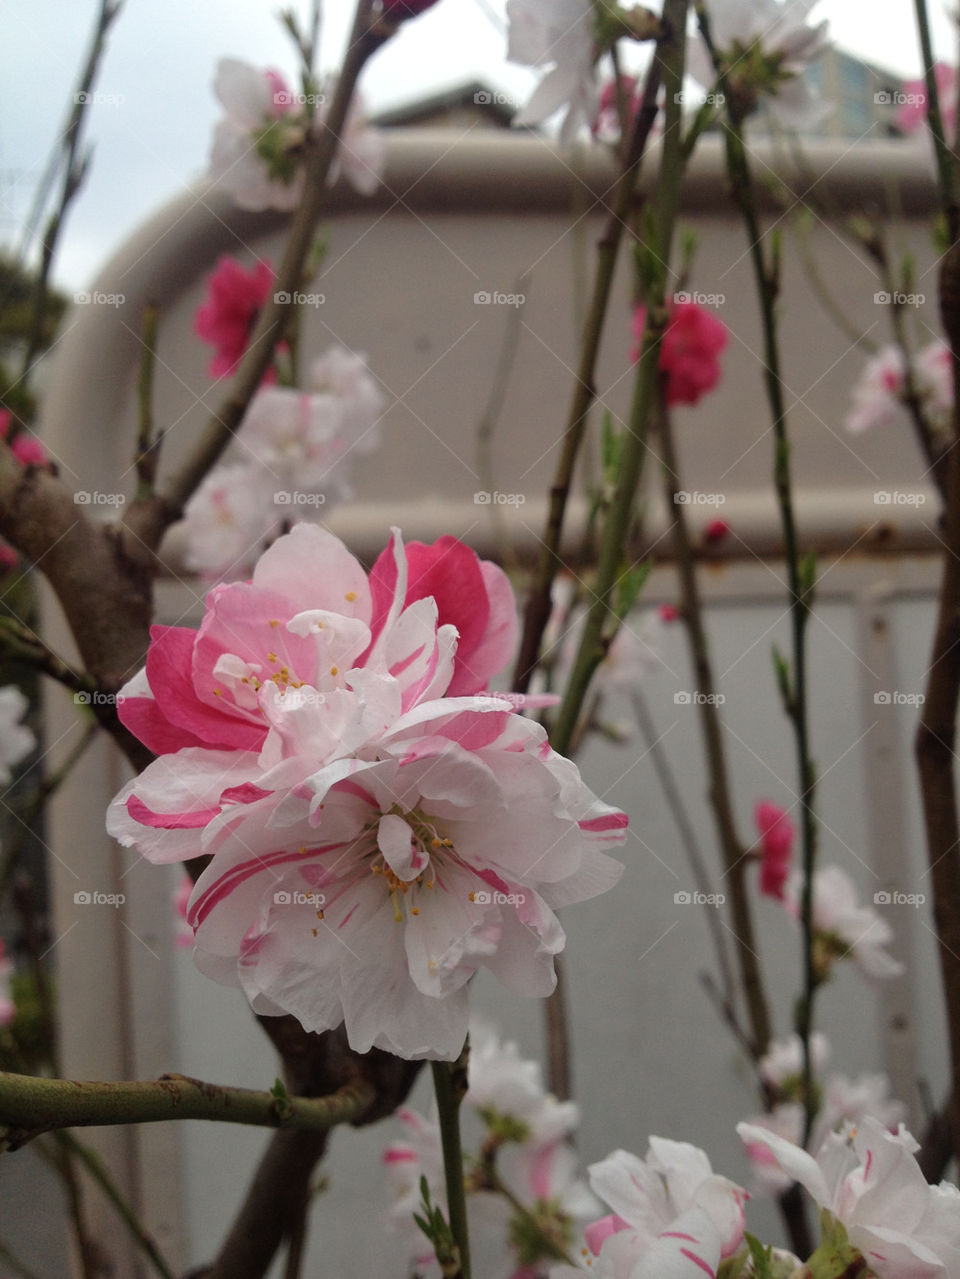 Cherry blossom!!